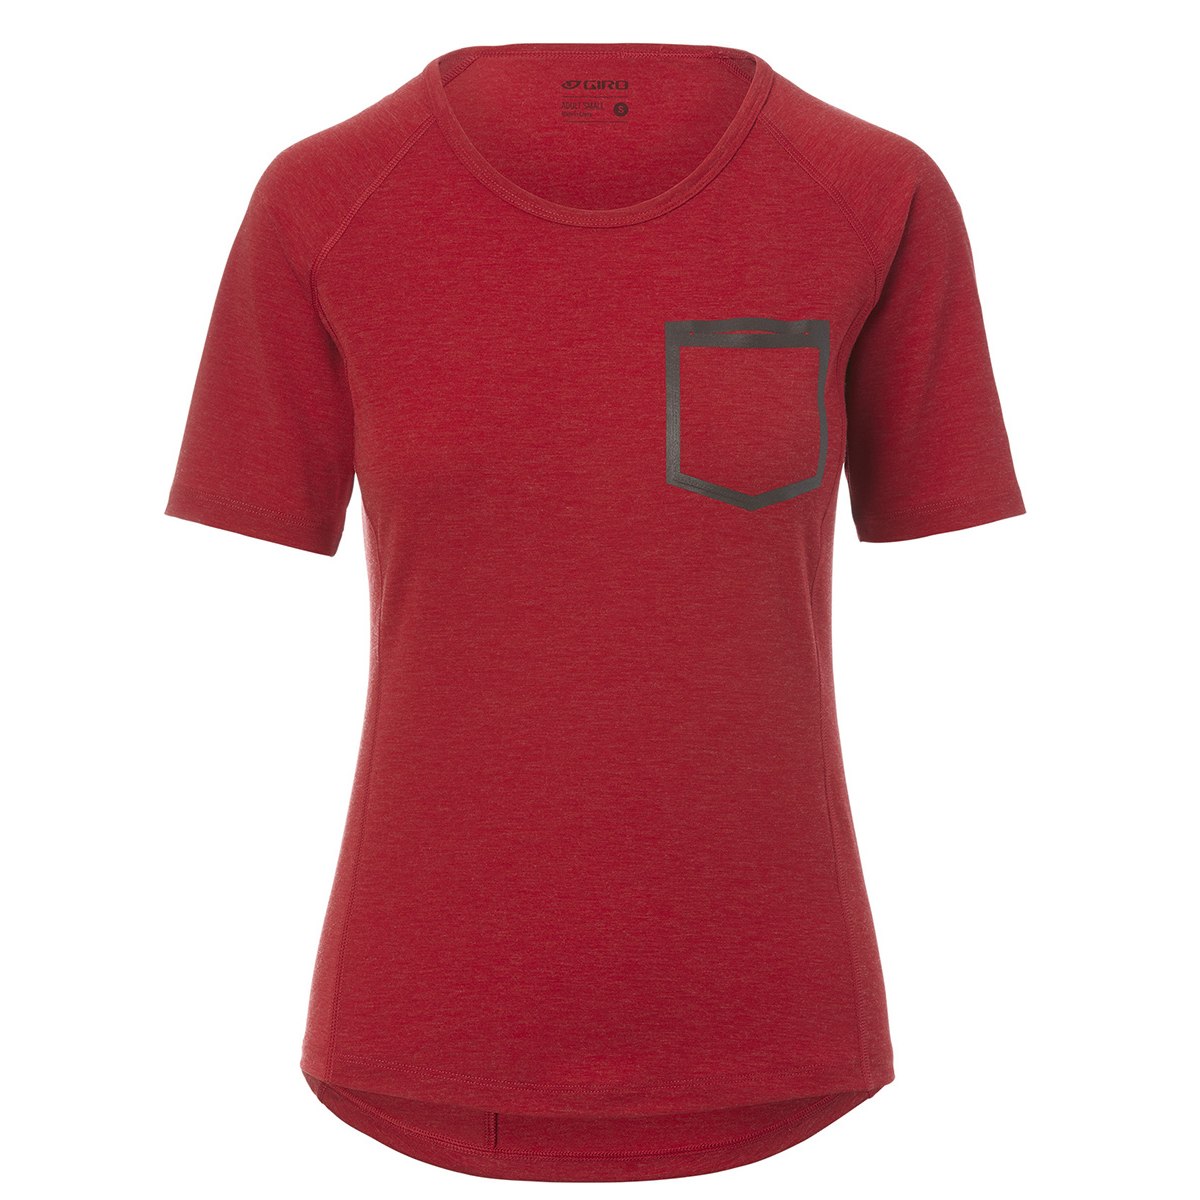 Productfoto van Giro Venture II Fietsshirt Dames - dark red